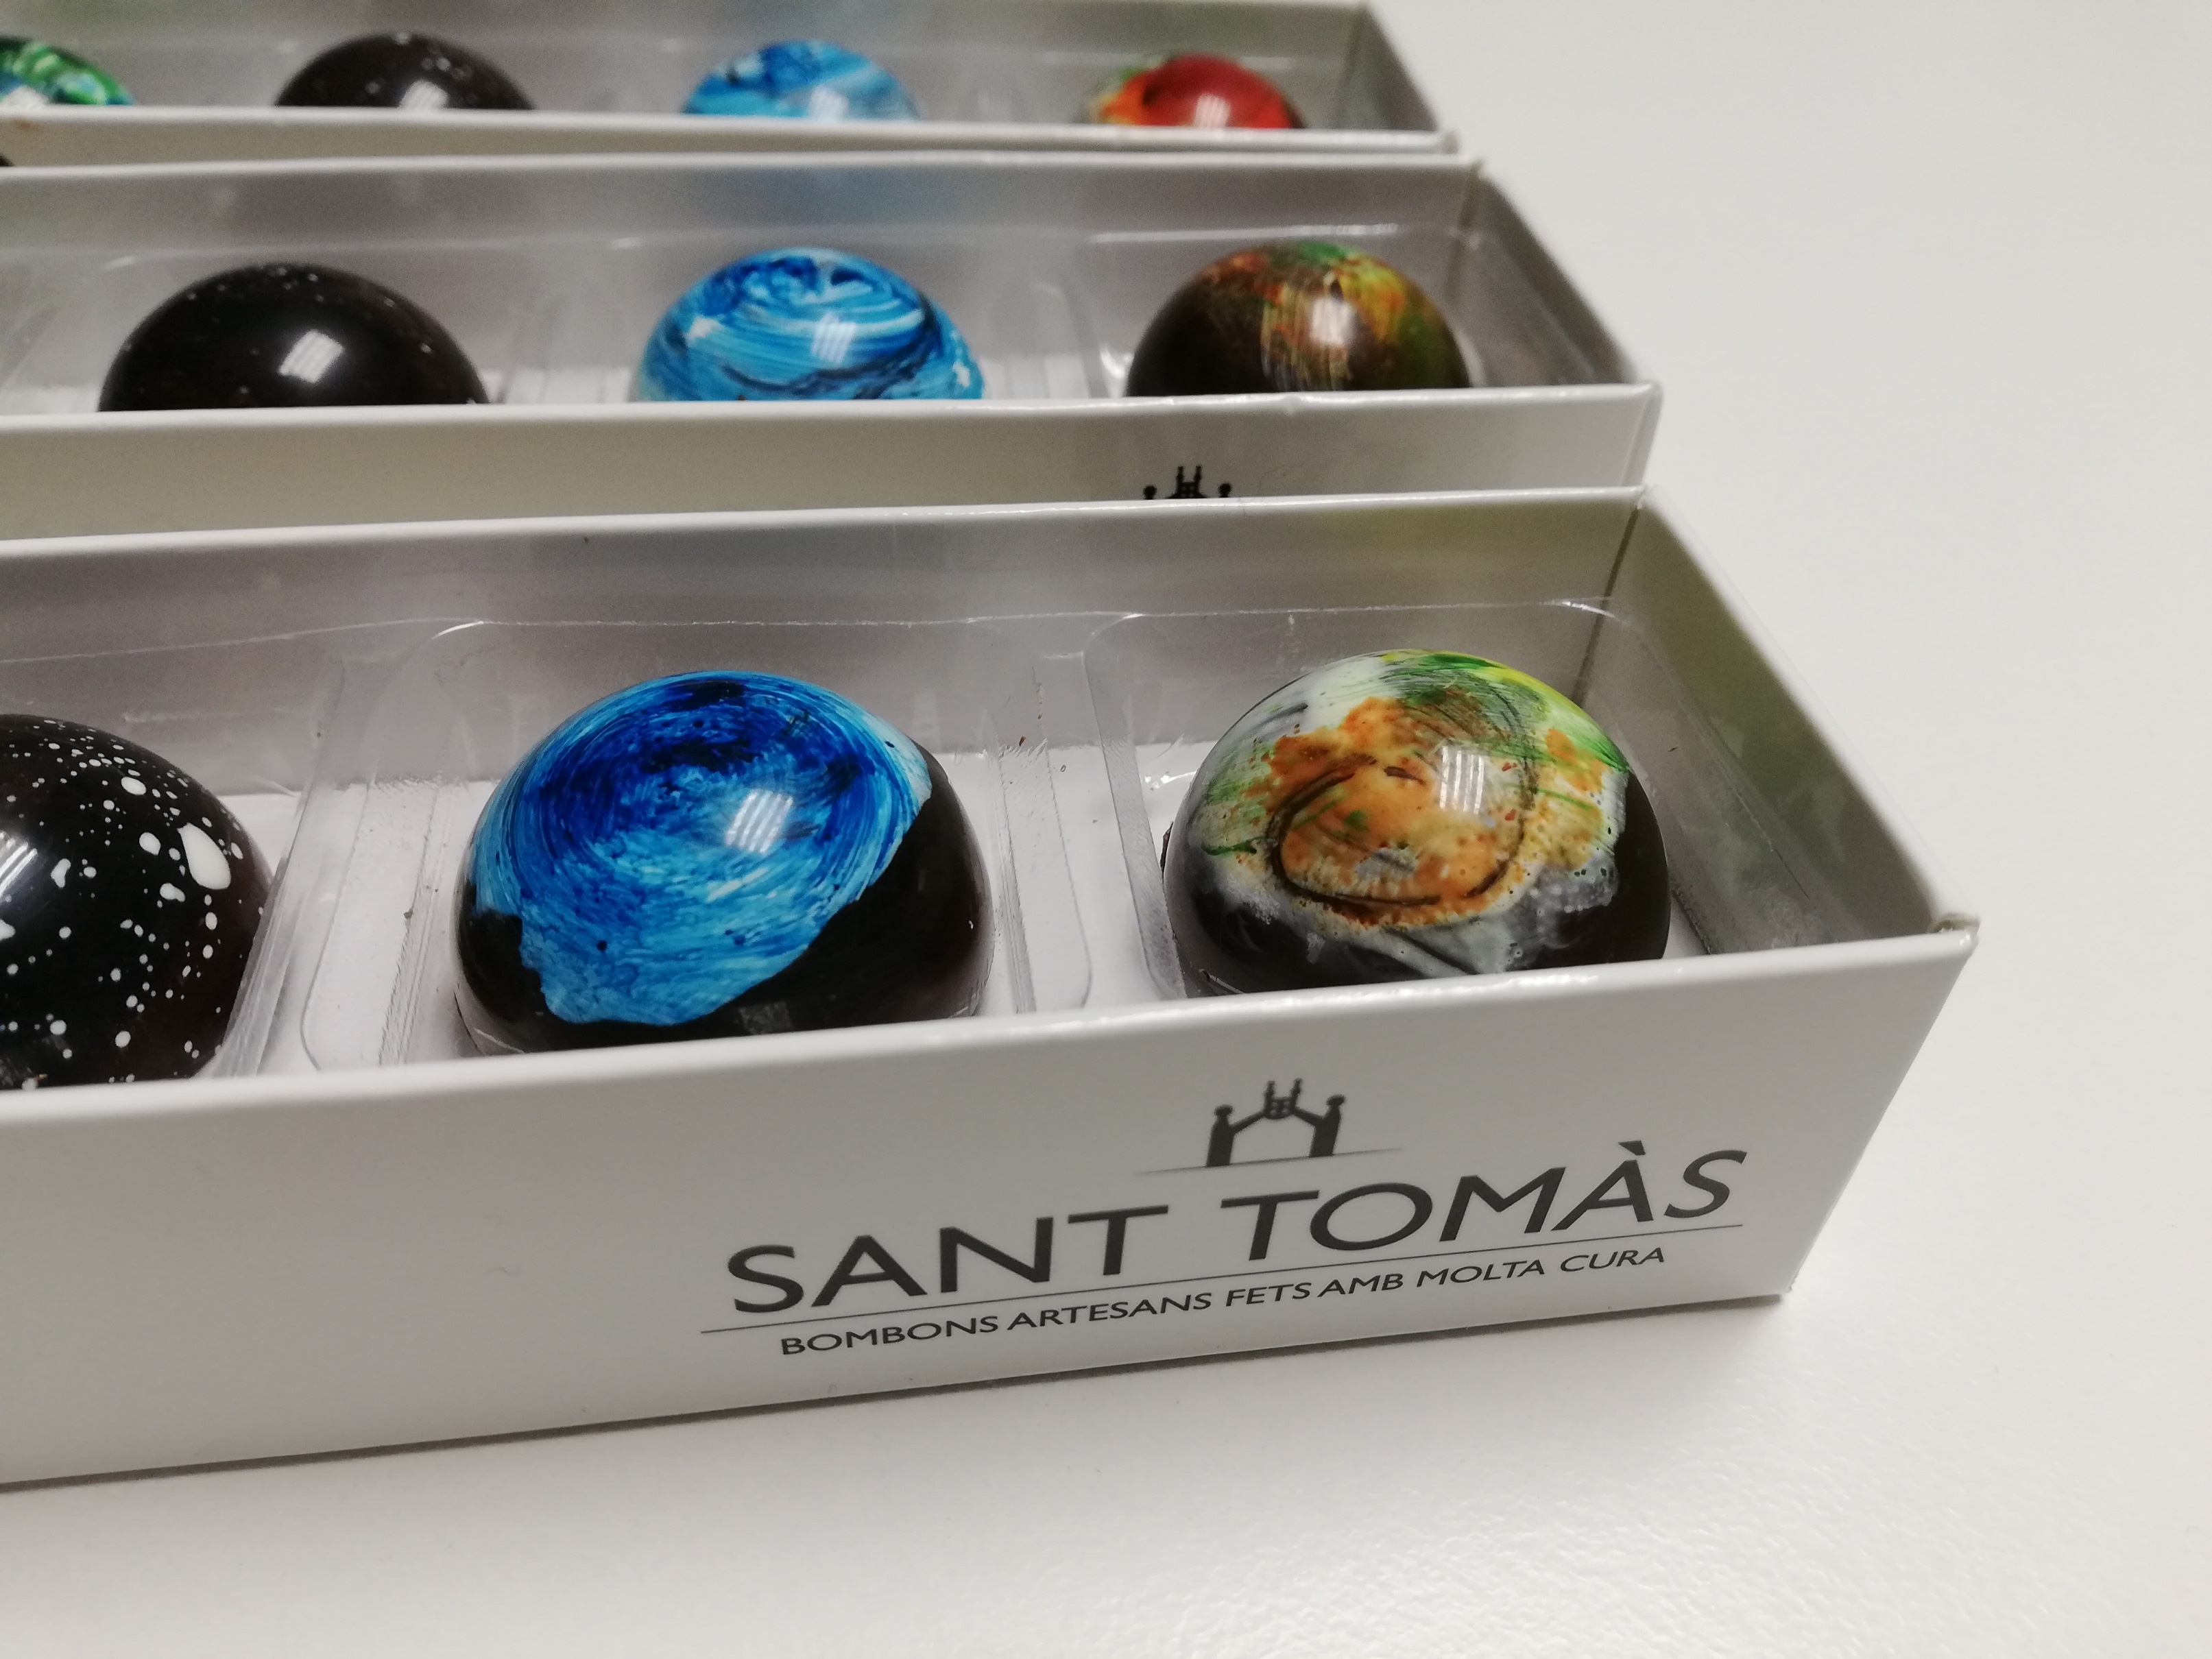 Els bombons de Sant Tomàs es lliuren com obsequi de cortesia a l'hotel Hilton